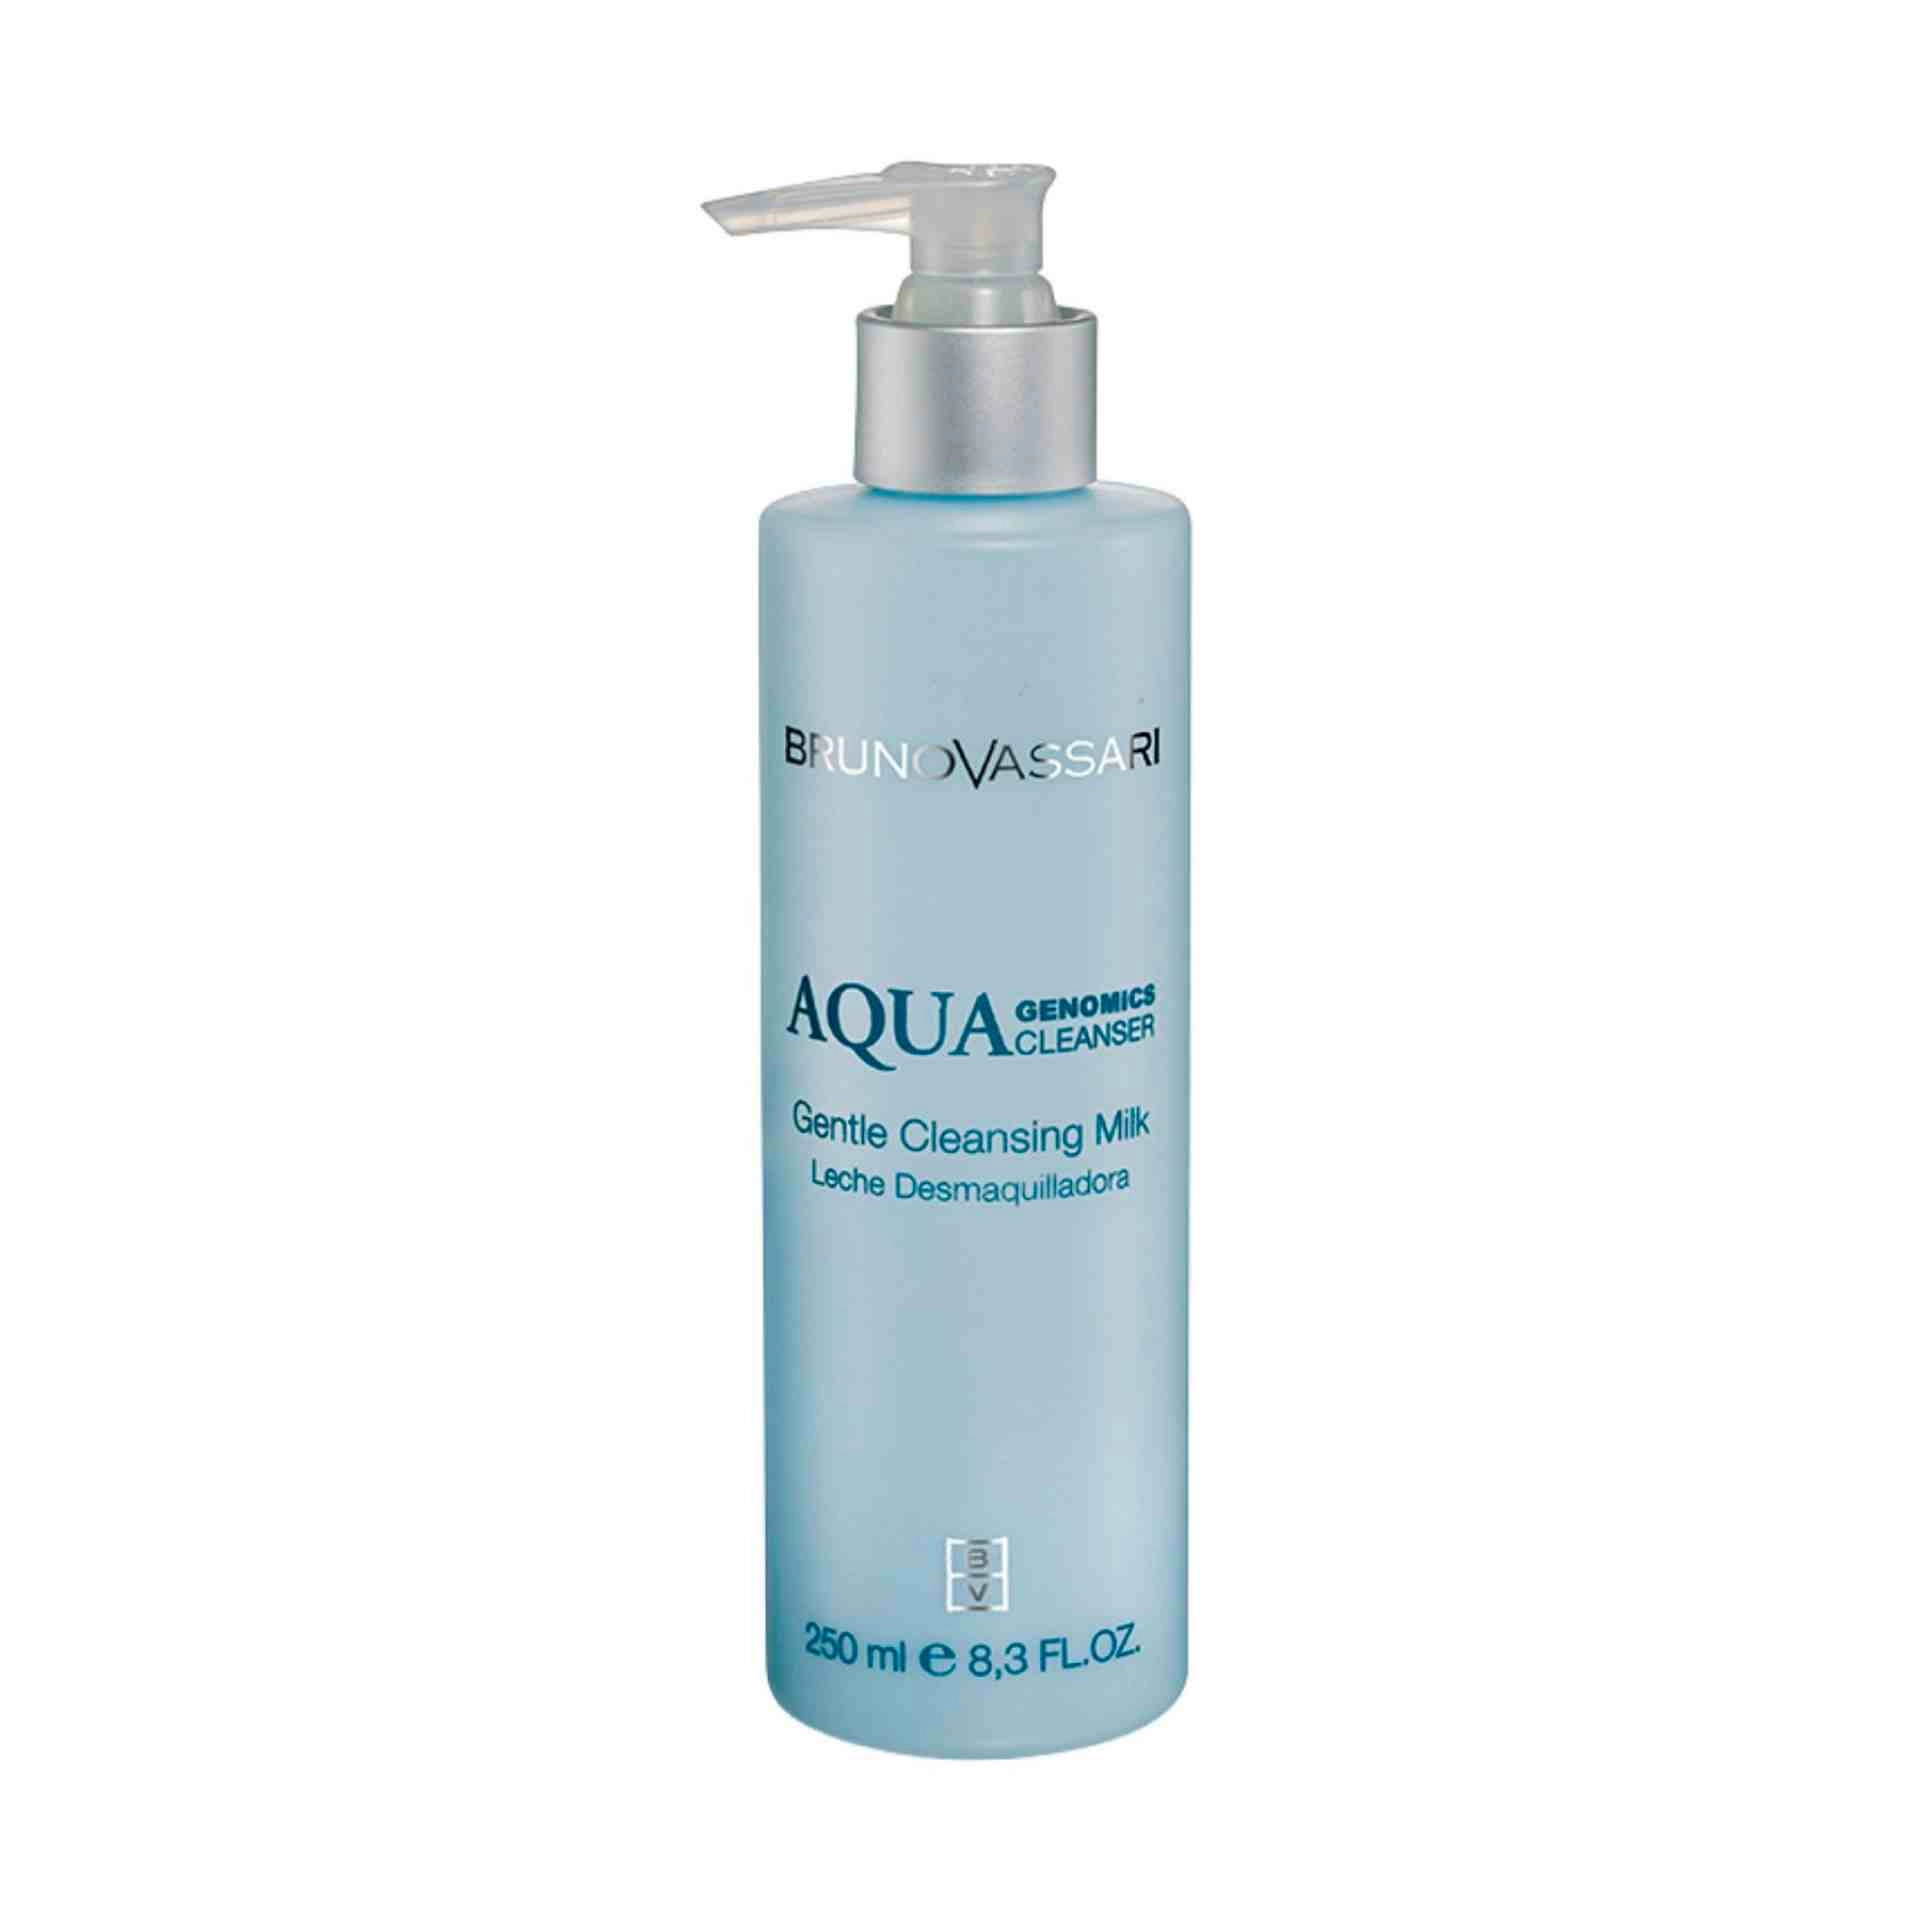 Aqua Cleanser Milk | Leche desmaquillante 250ml - Aqua Genomics - Bruno Vassari ®